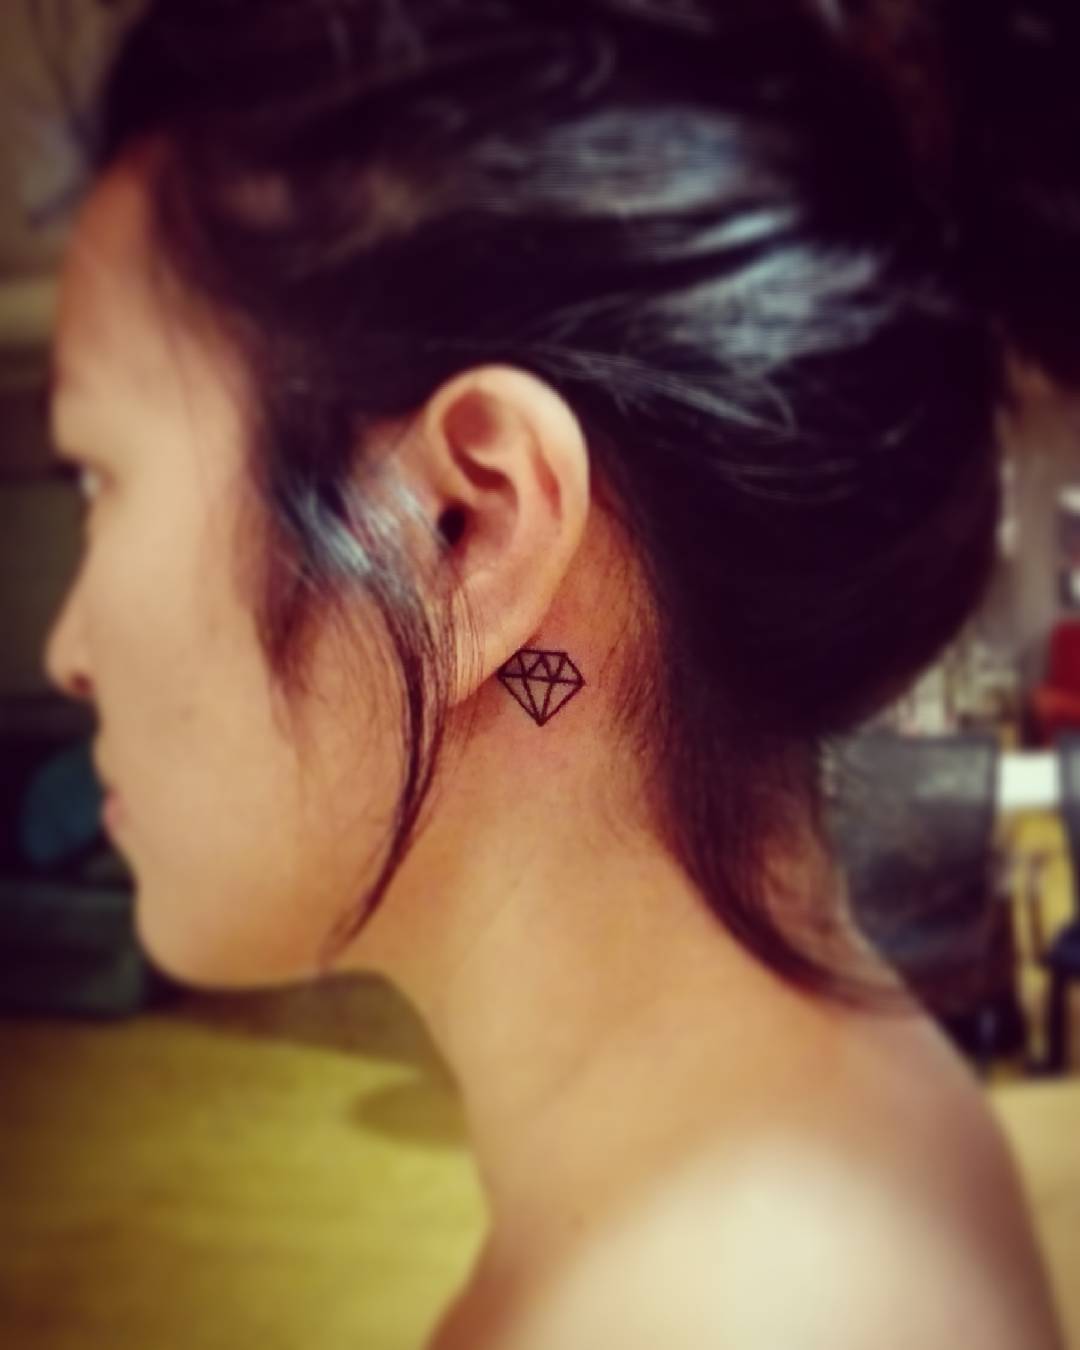 Tatuagem de diamante traçado atrás da orelha.